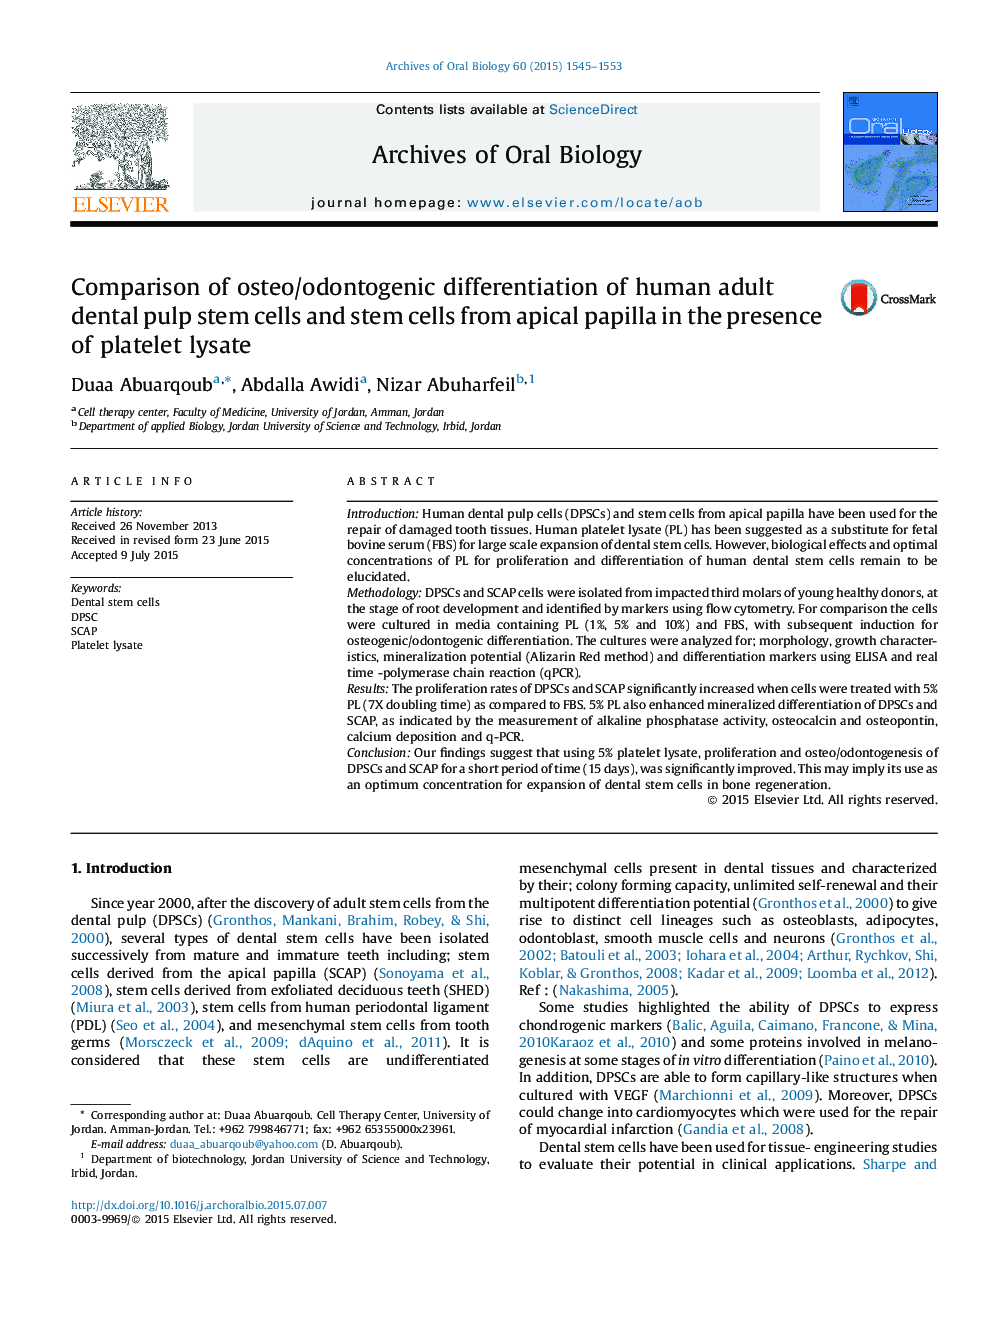 مقایسه تمایز استئو / ادنتوژنیک سلولهای بنیادی پالپ دندان پستان انسان و سلول های بنیادی پاپیل آپیکال در حضور پلاکت لیسانات 